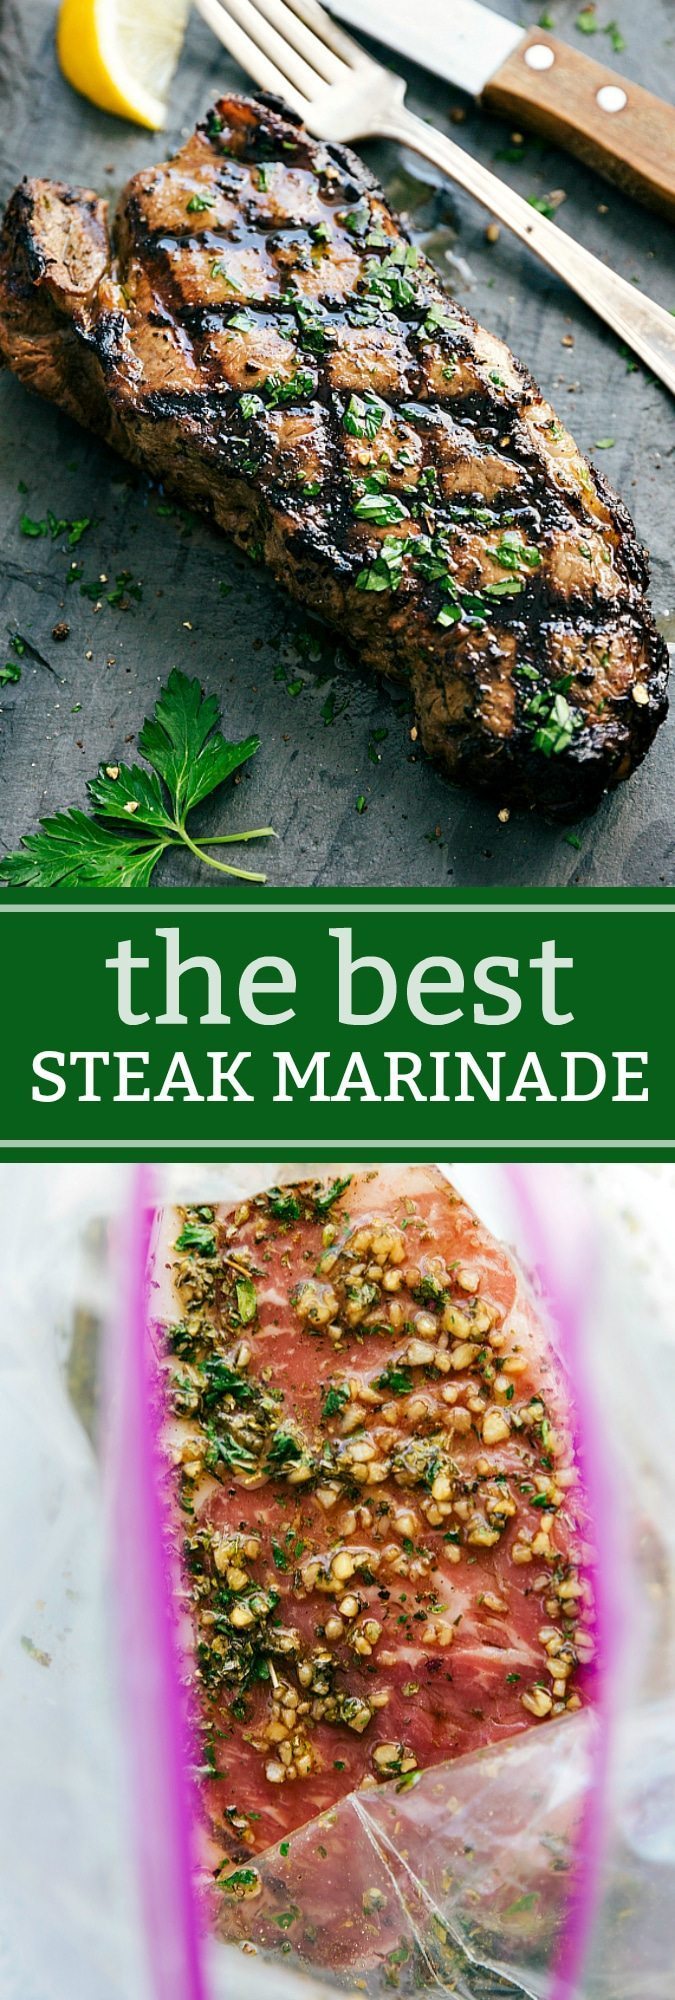 Best steak marinade